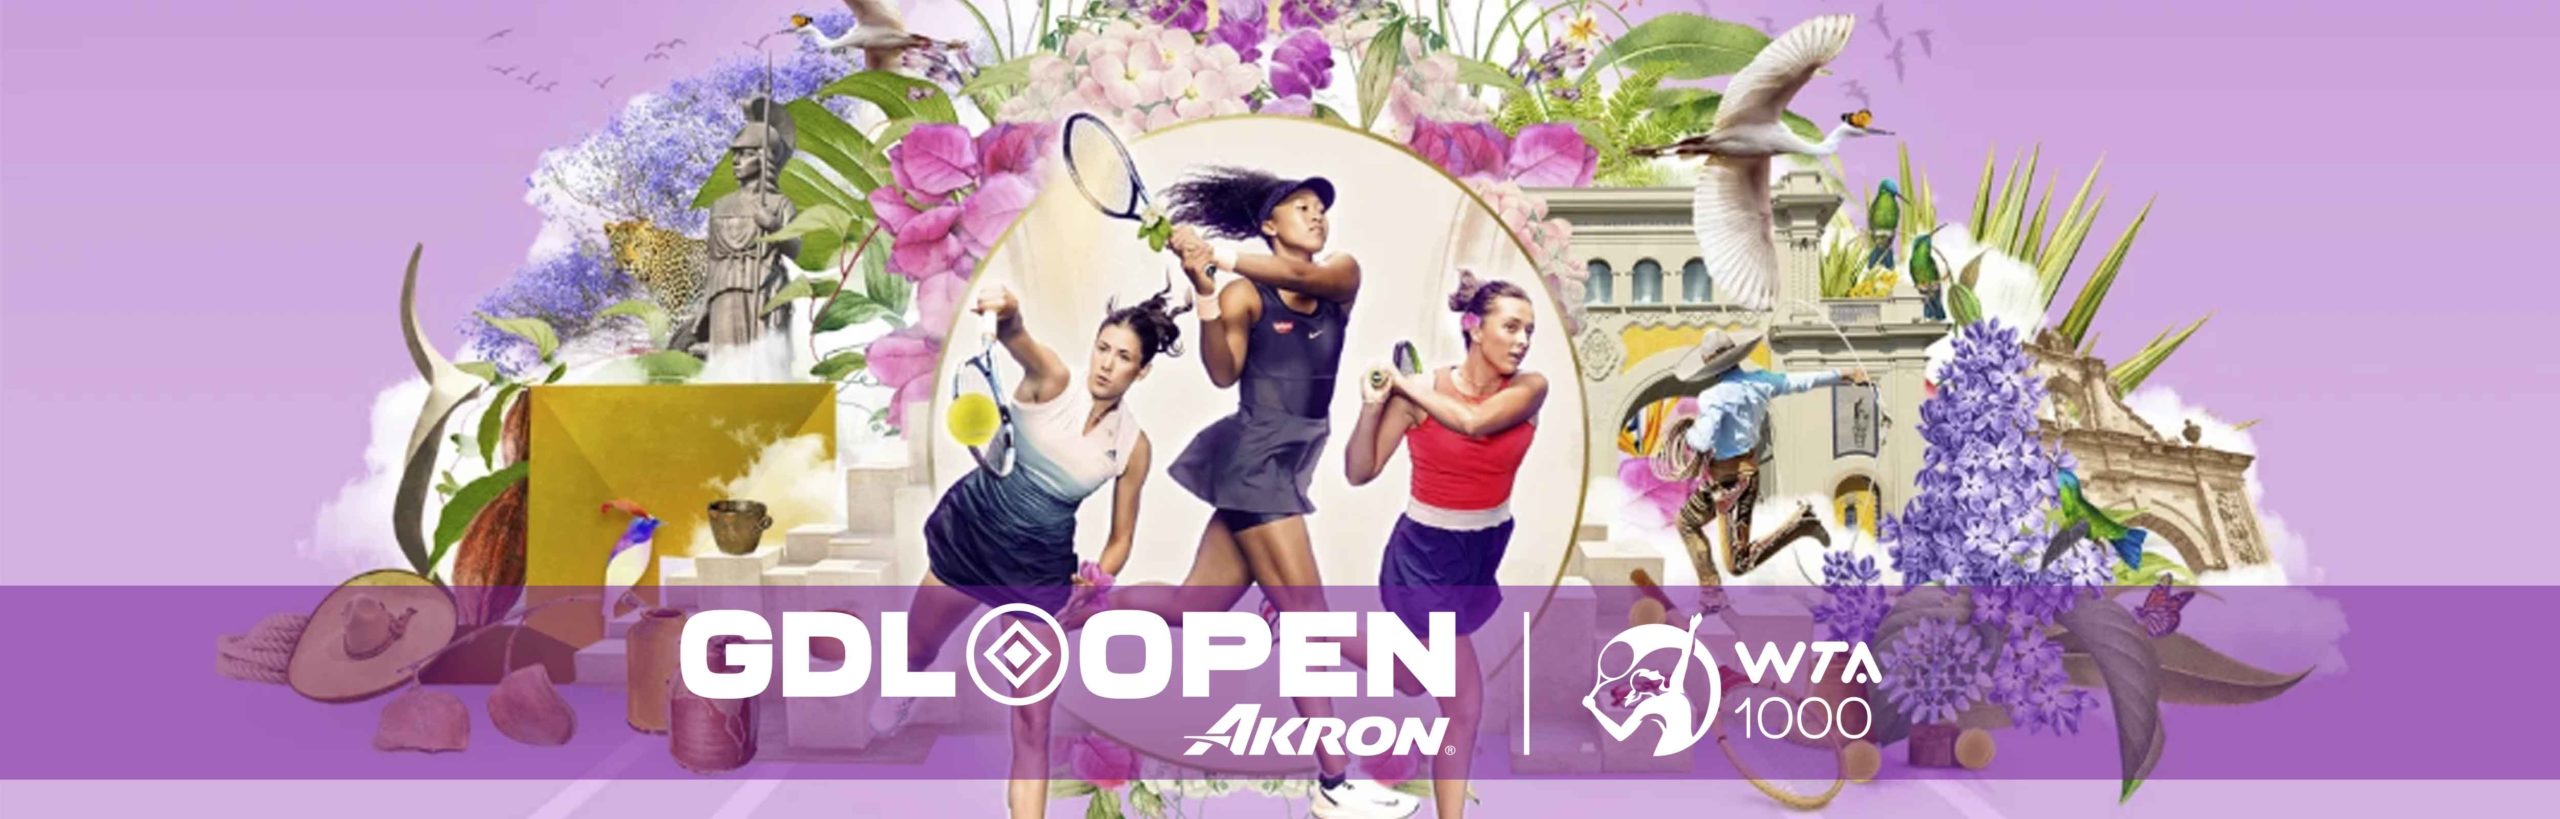 Apuestas de Tenis - Banner WTA Guadalajara Open Akron 2022